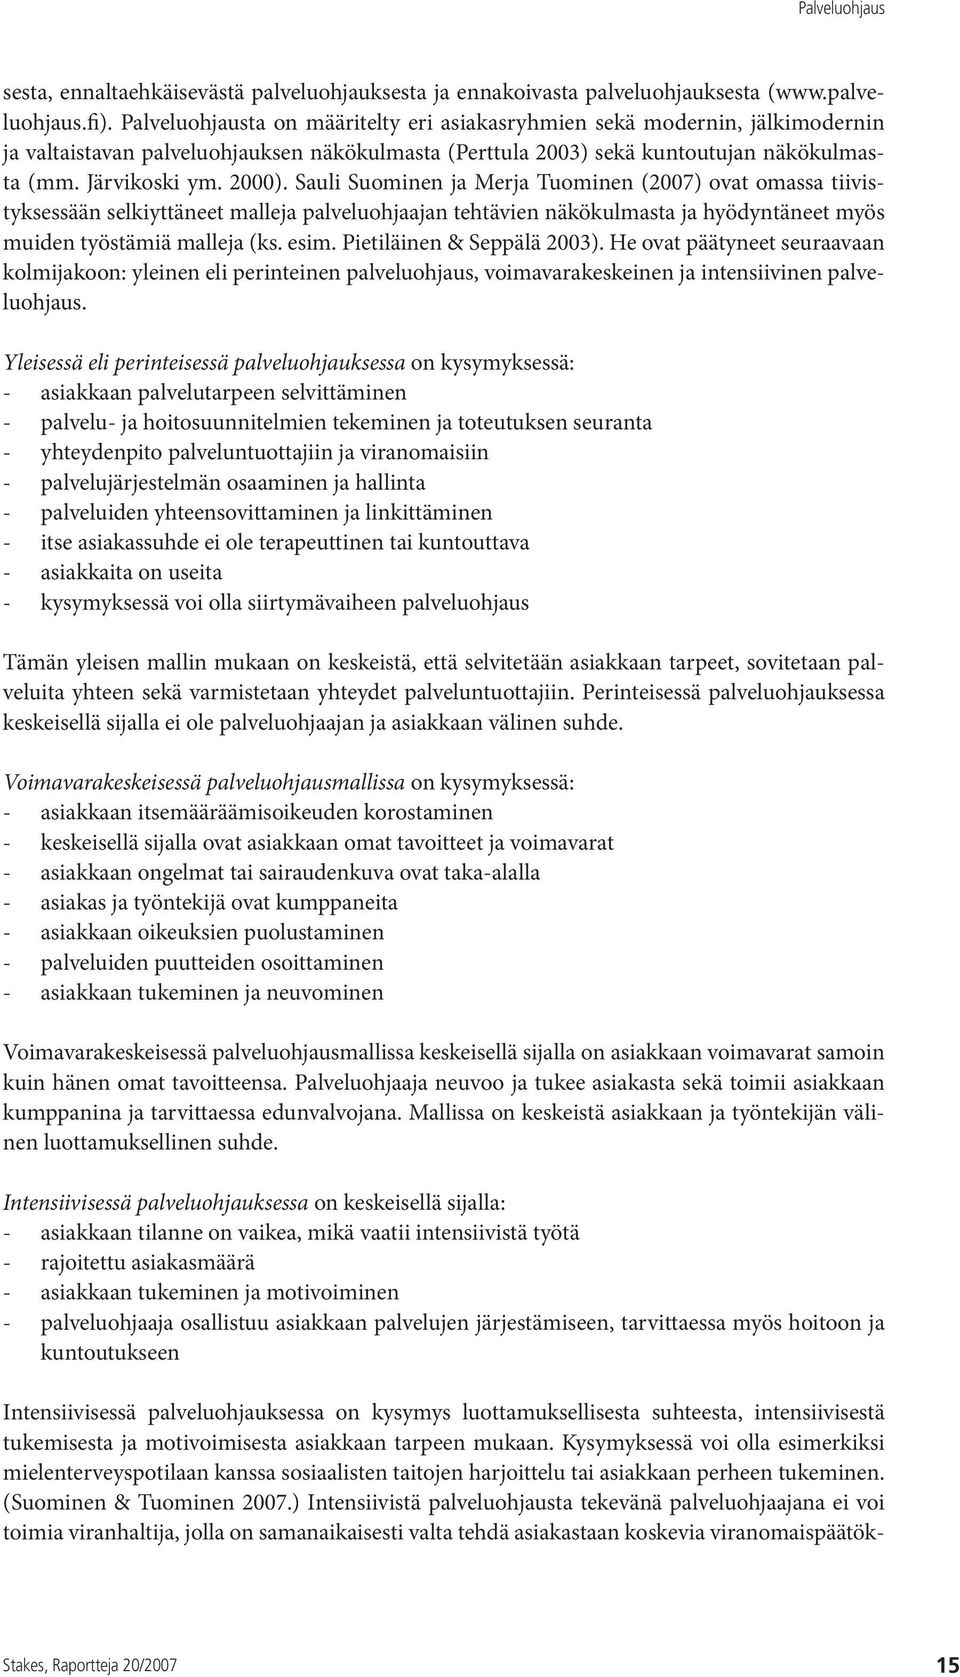 Sauli Suominen ja Merja Tuominen (2007) ovat omassa tiivistyksessään selkiyttäneet malleja palveluohjaajan tehtävien näkökulmasta ja hyödyntäneet myös muiden työstämiä malleja (ks. esim.